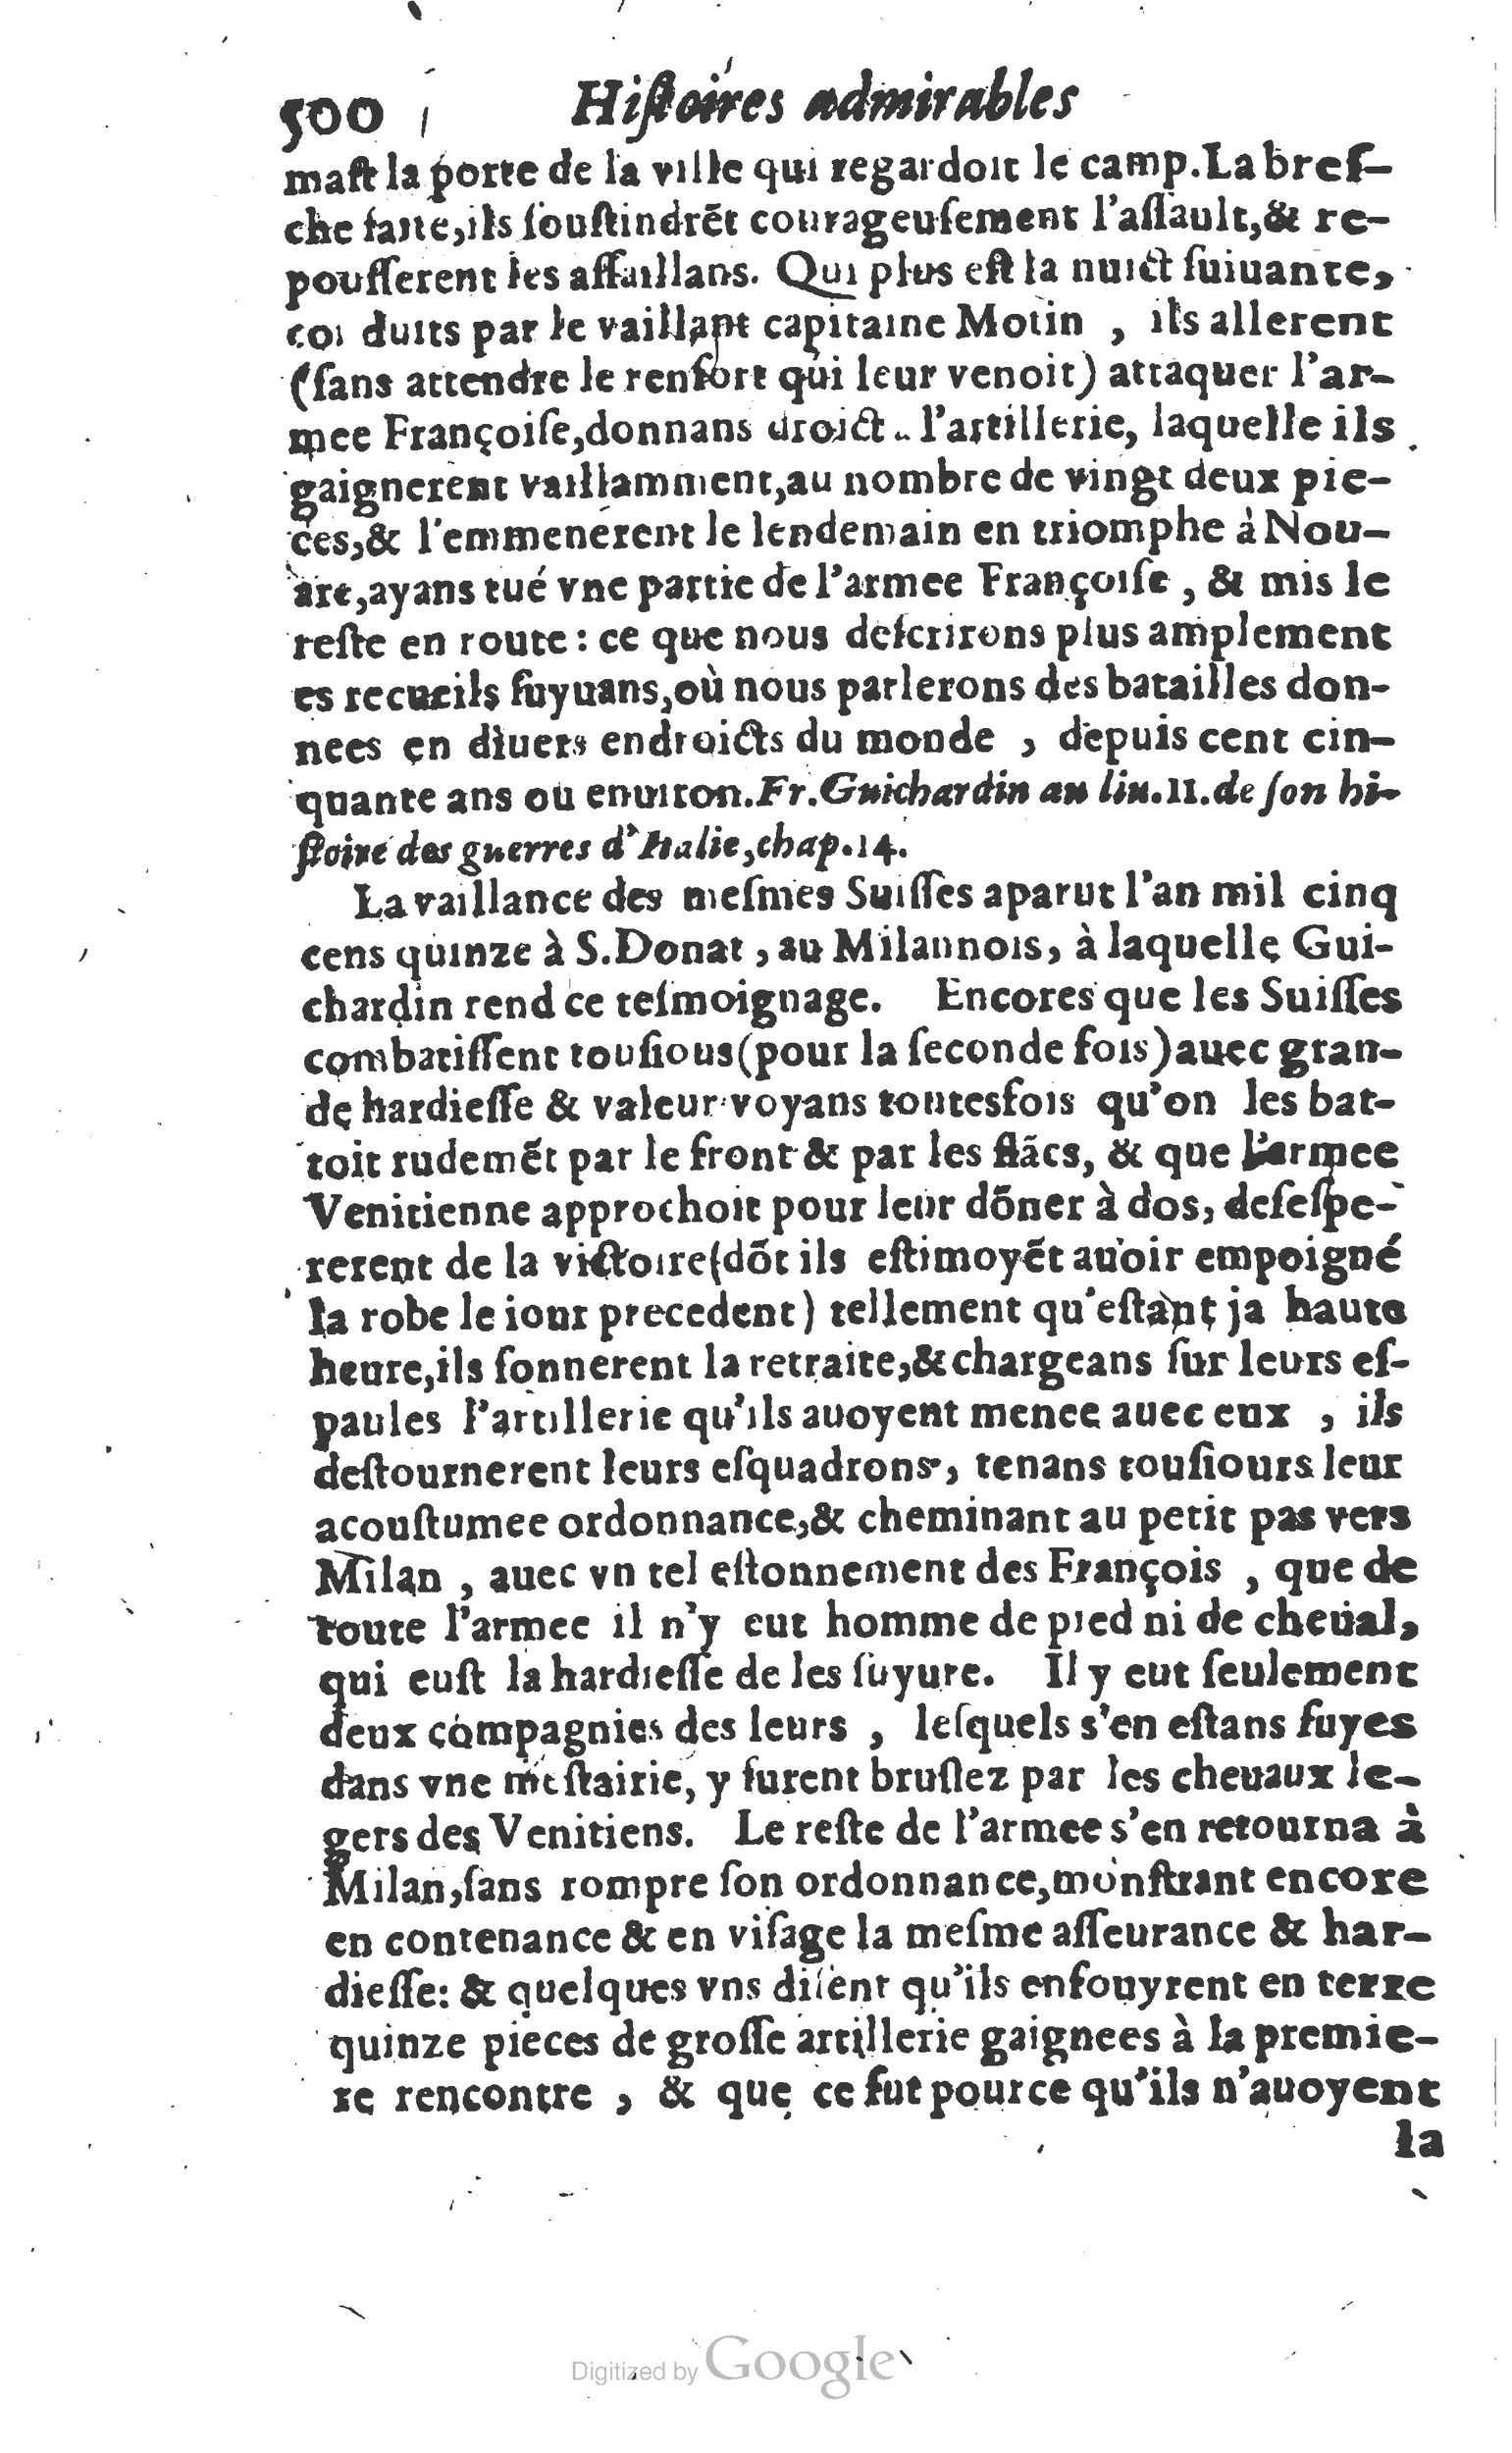 1610 Trésor d’histoires admirables et mémorables de nostre temps Marceau Princeton_Page_0521.jpg